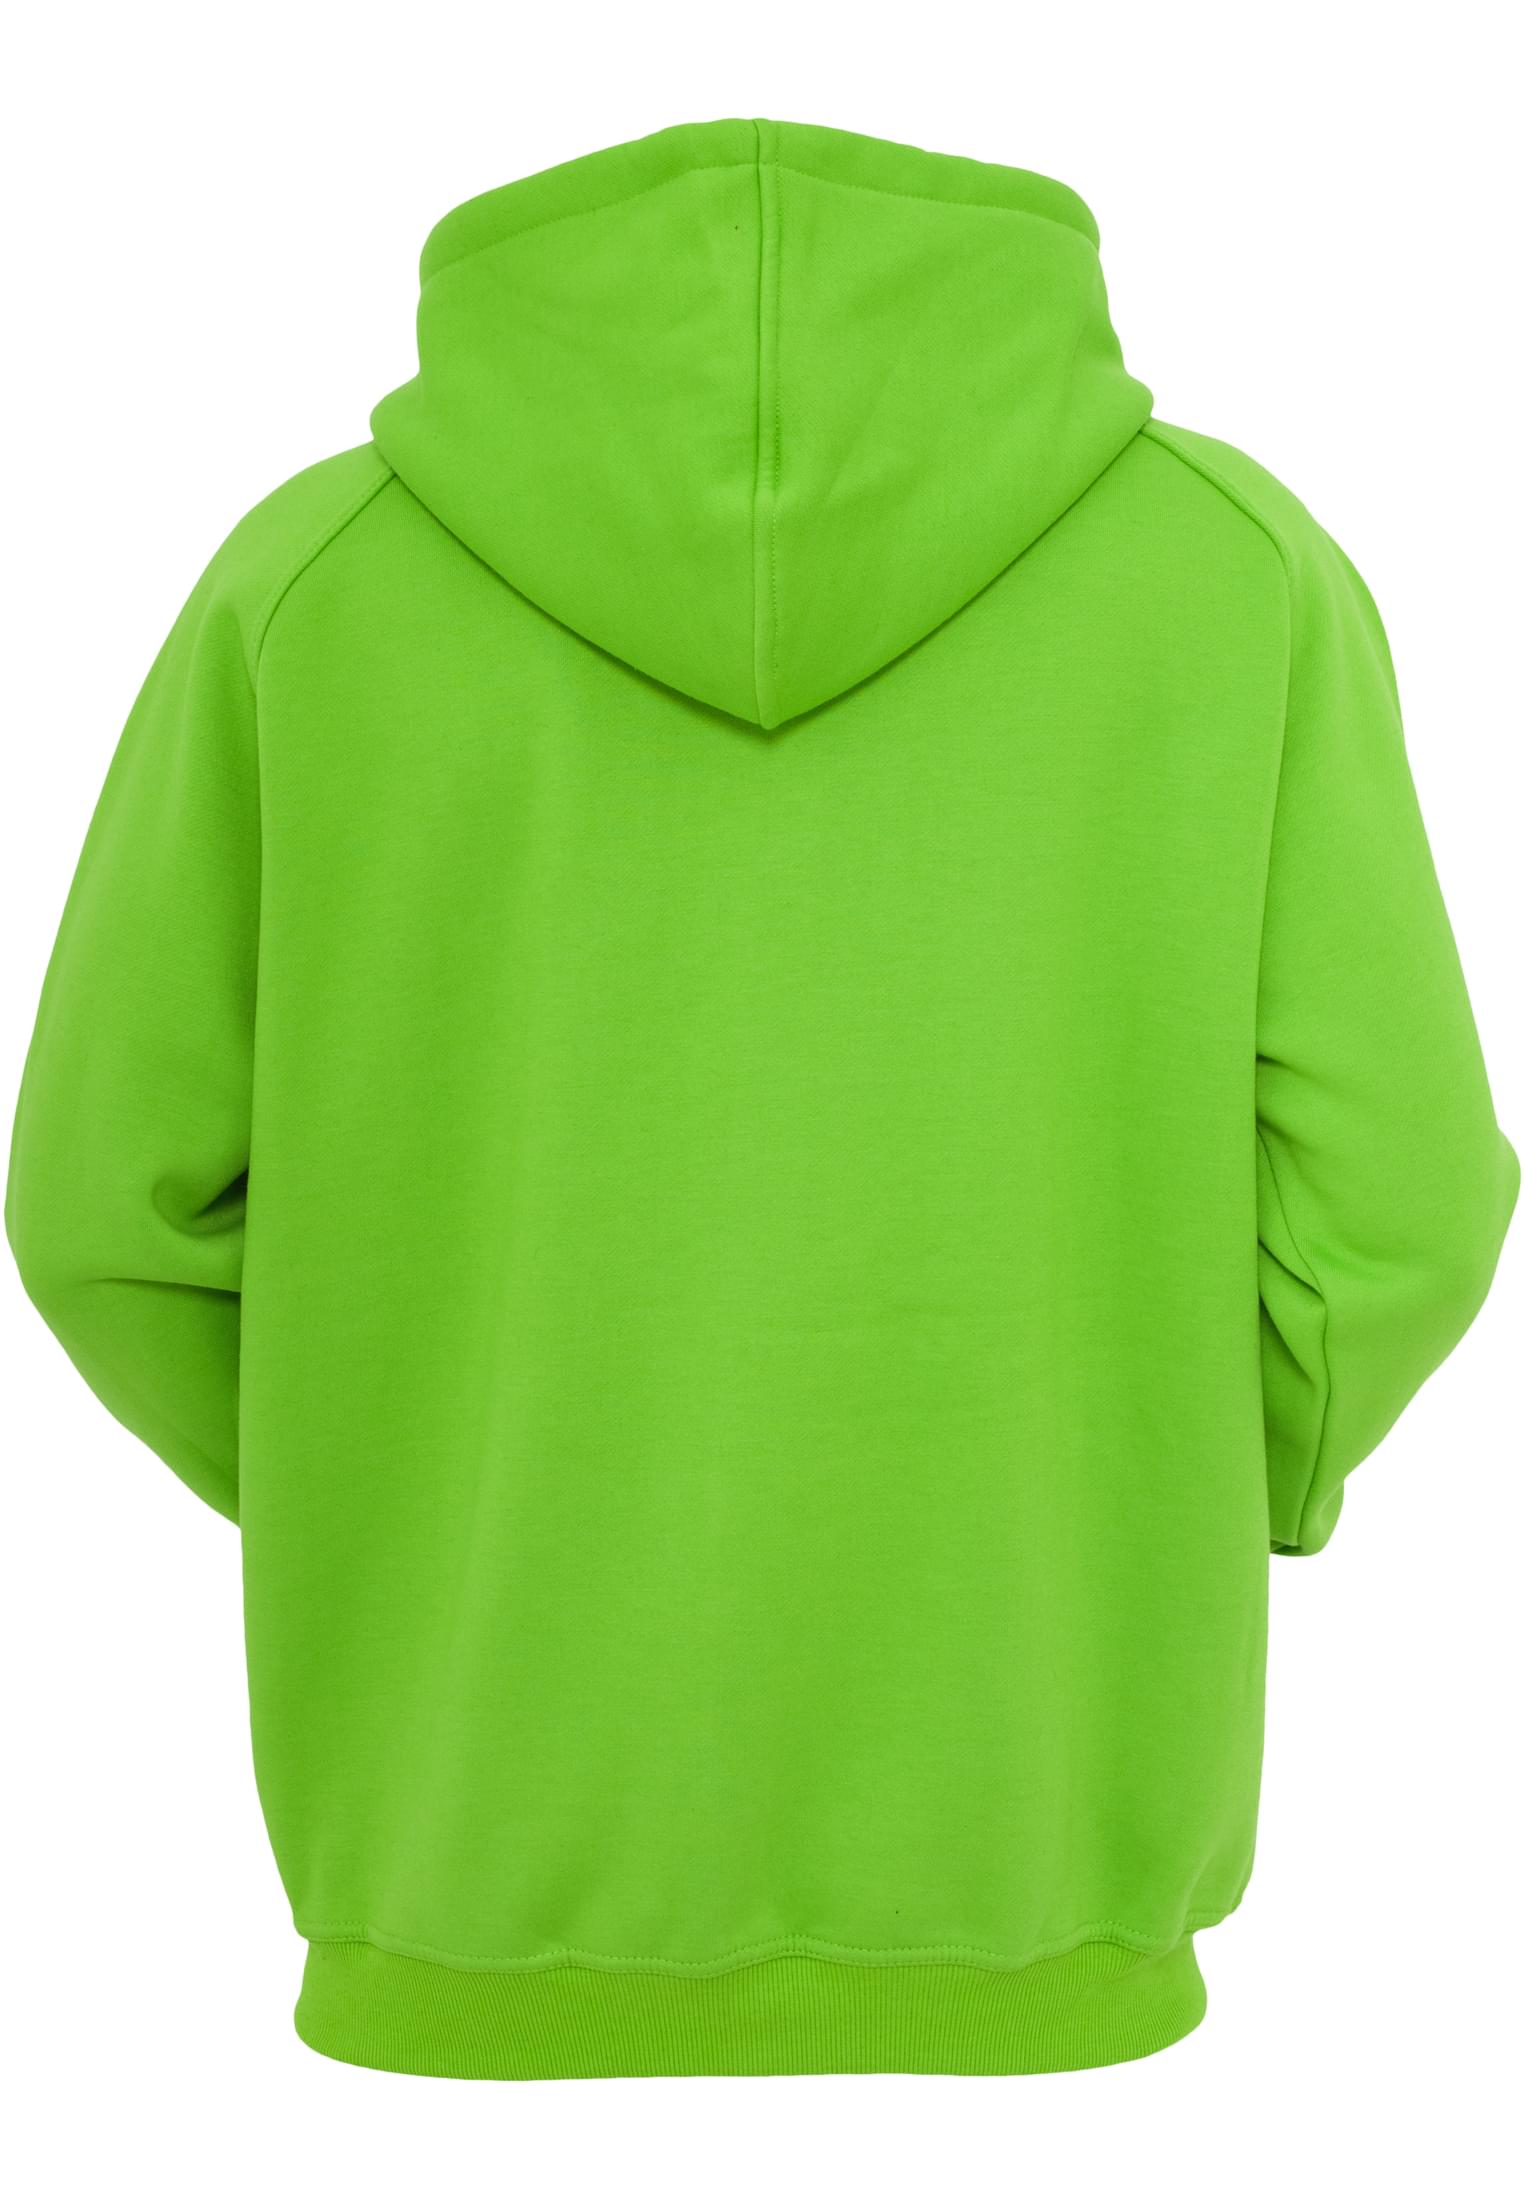 Zip-Hoodies Zip Hoody in Farbe limegreen